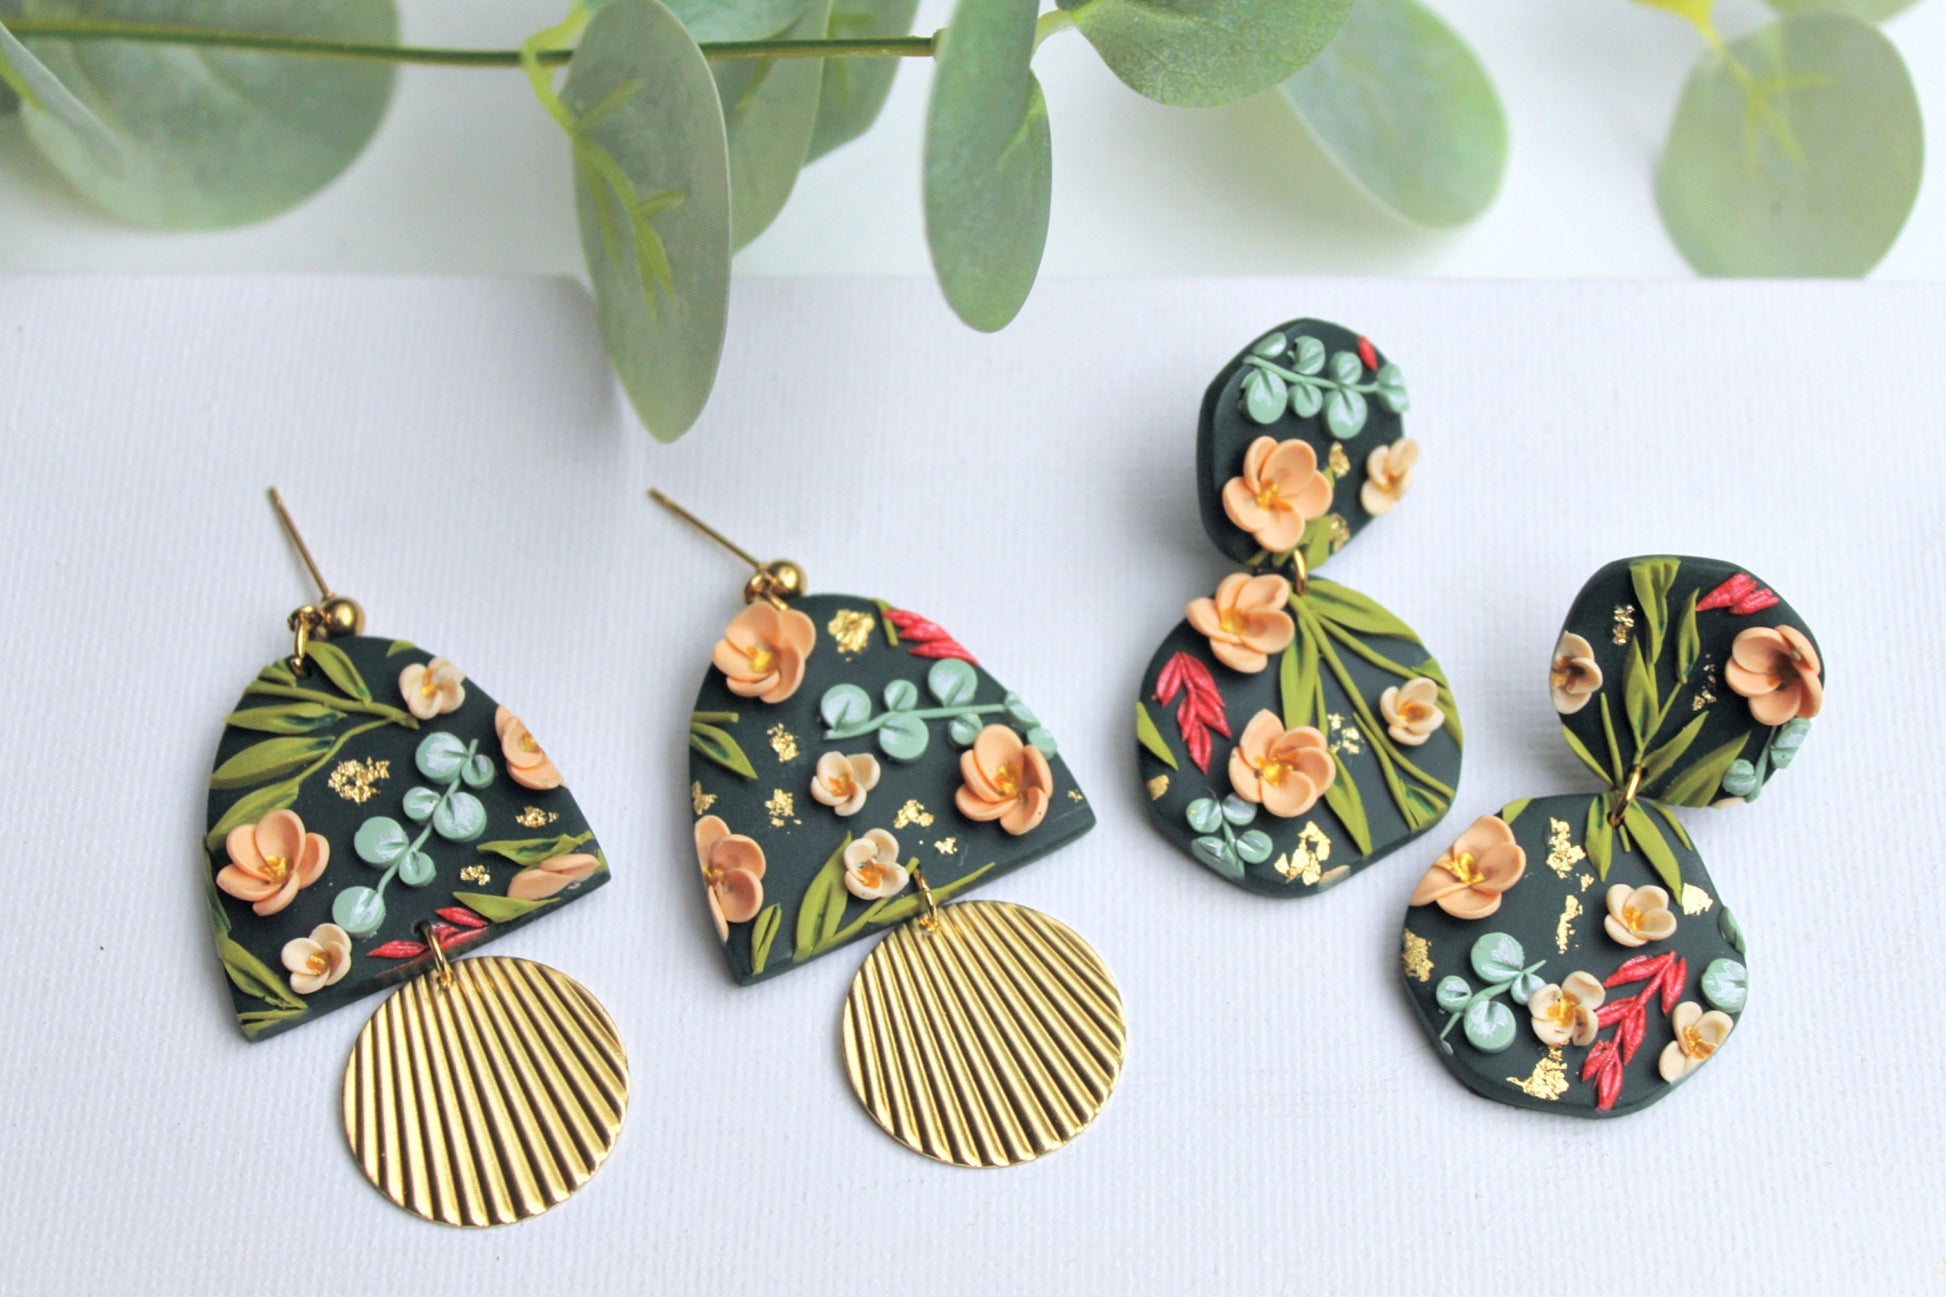 Handmade Earrings, Green Earrings, Flower Earrings, Statement Earrings, Clay Earrings, Floral Dangle Earrings, Spring Earrings, Floral, Gift